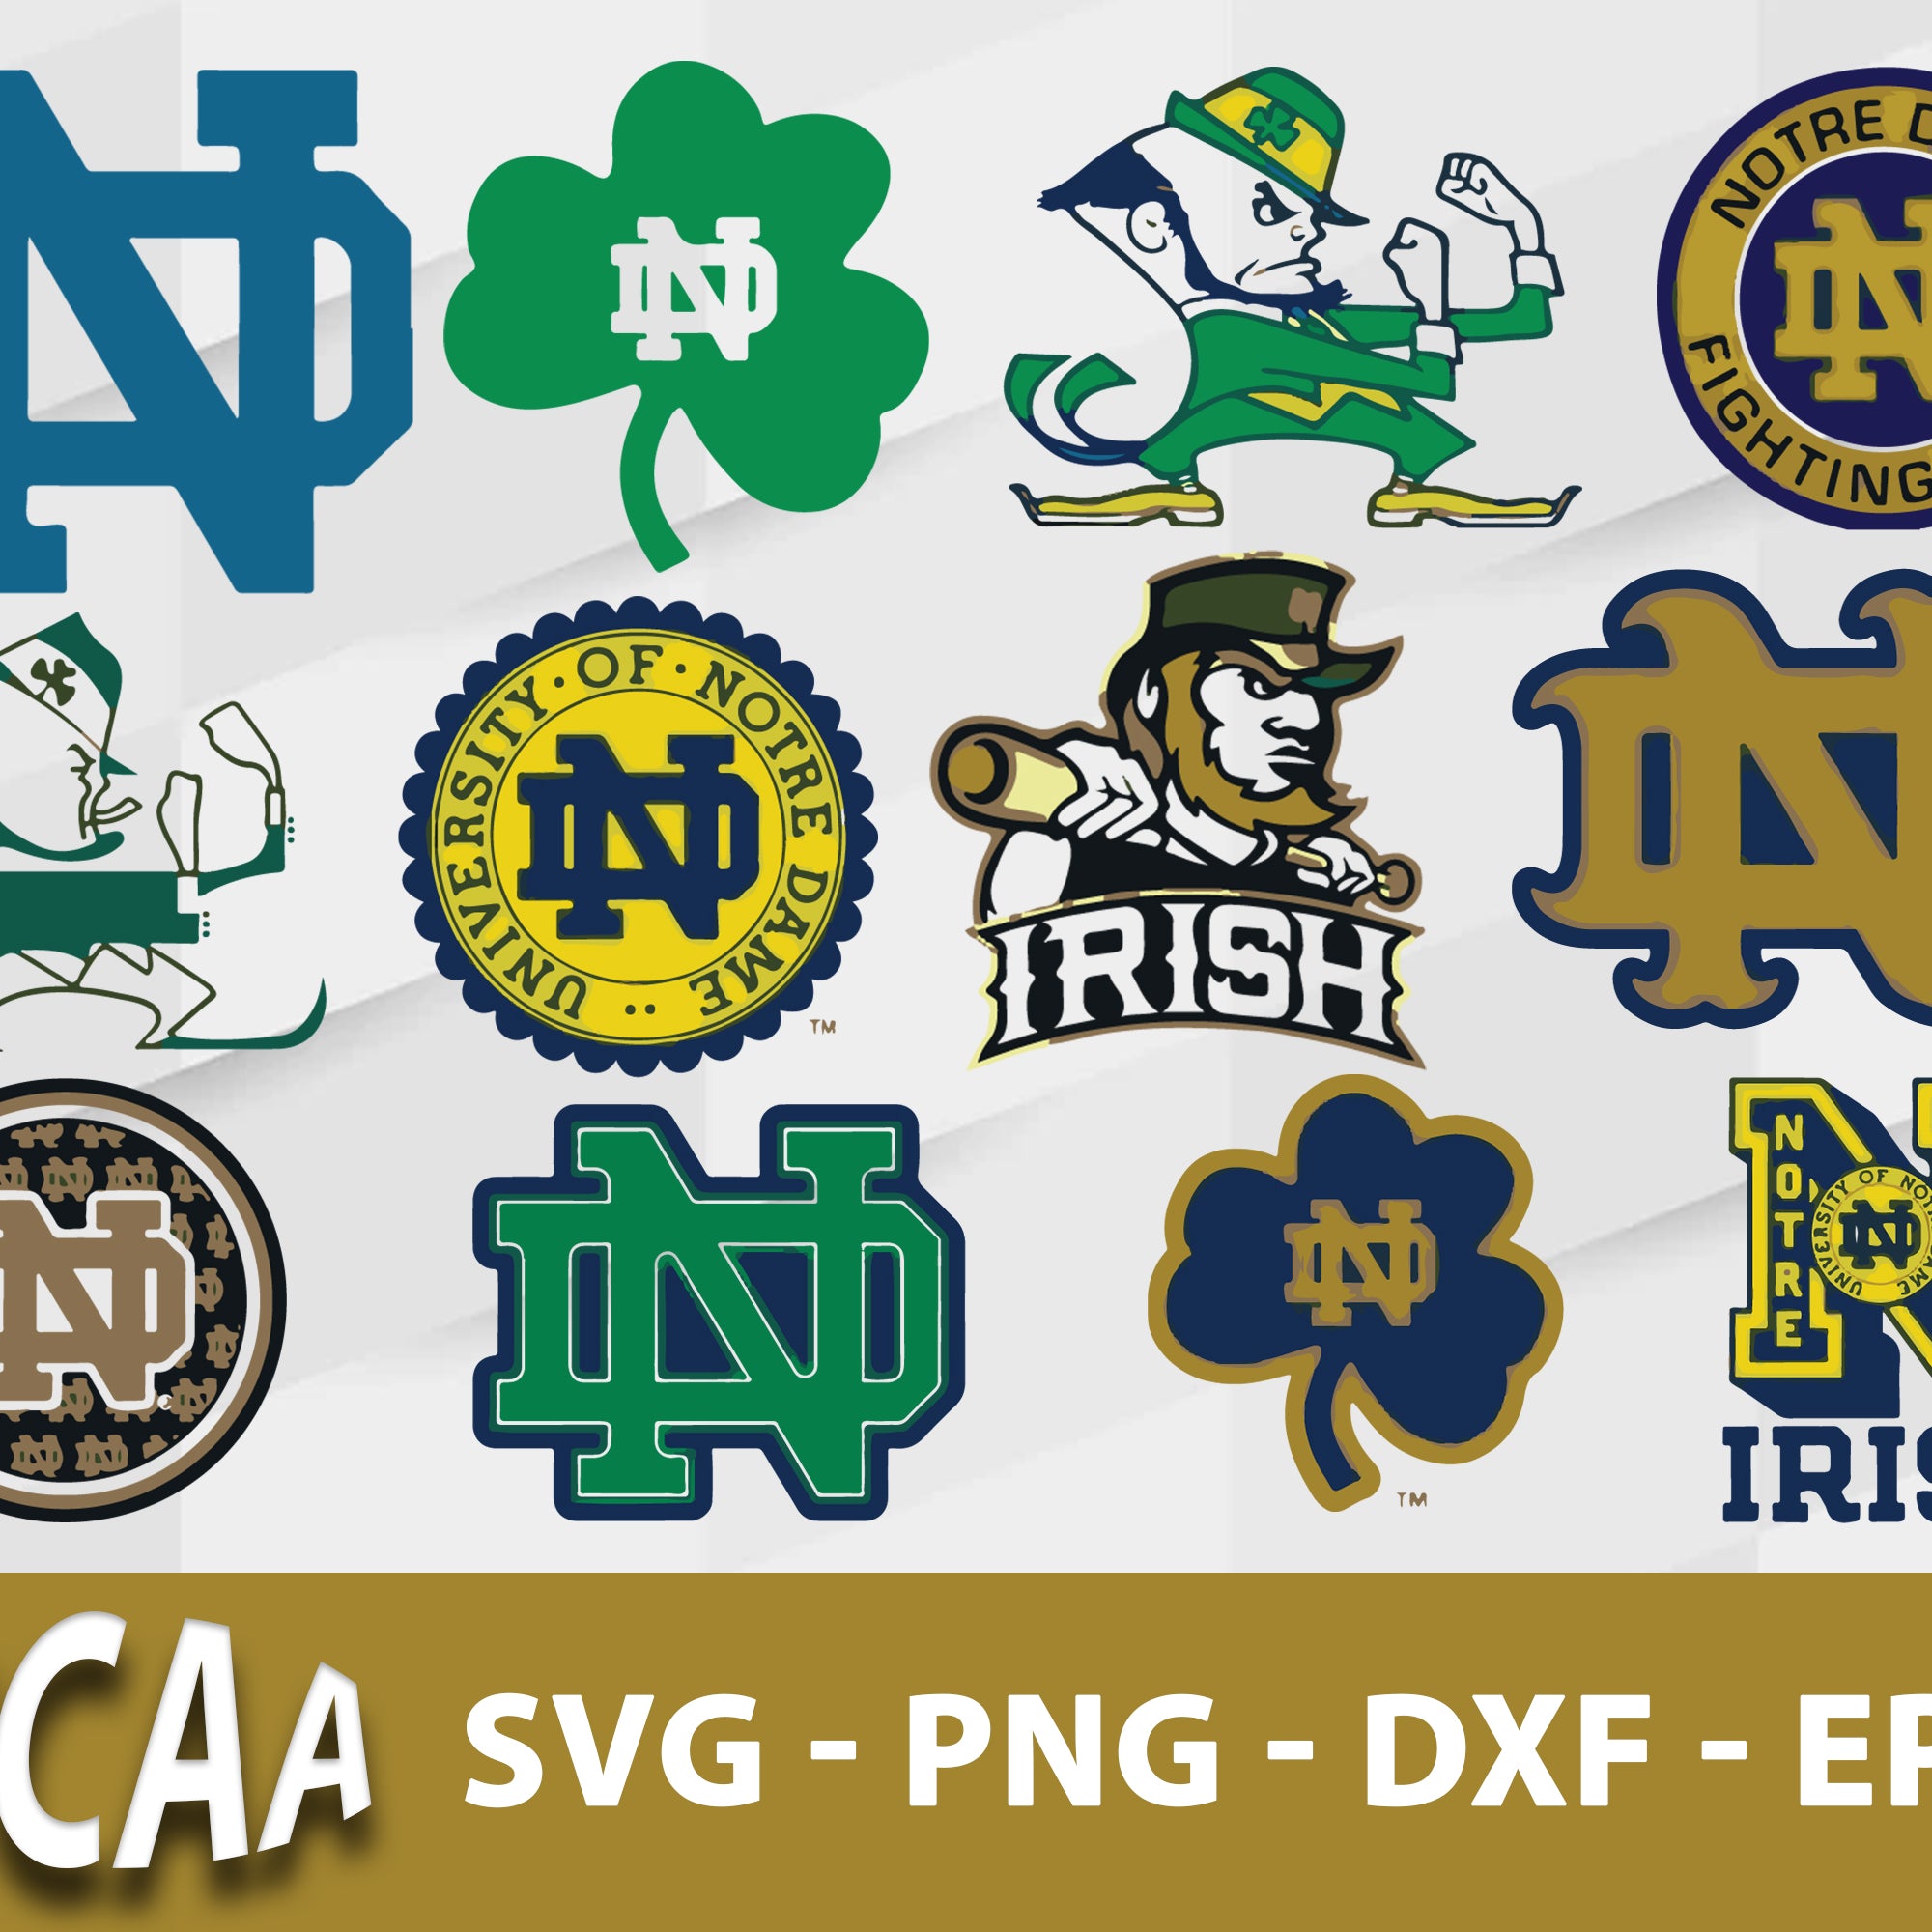 Notre Dame Fighting Irish Svg Bundle, Notre Dame Fighting Irish Svg, Sport Svg, Ncaa Svg, Png, Dxf, Eps Digital file.